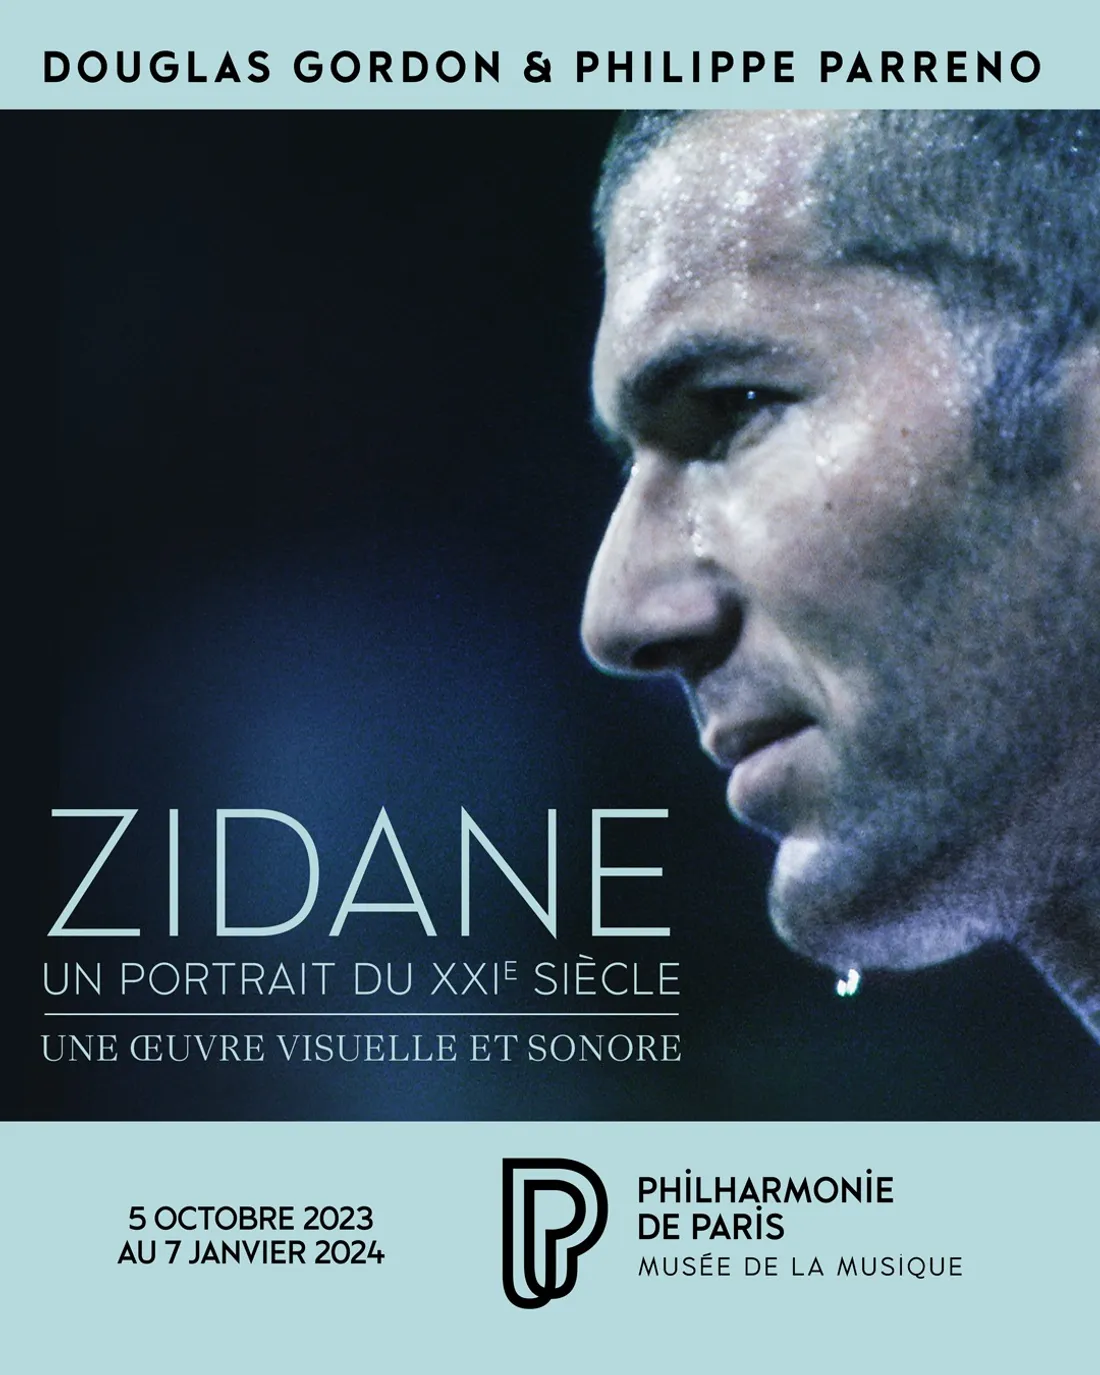 Zidane, un portrait du XXIe siècle 